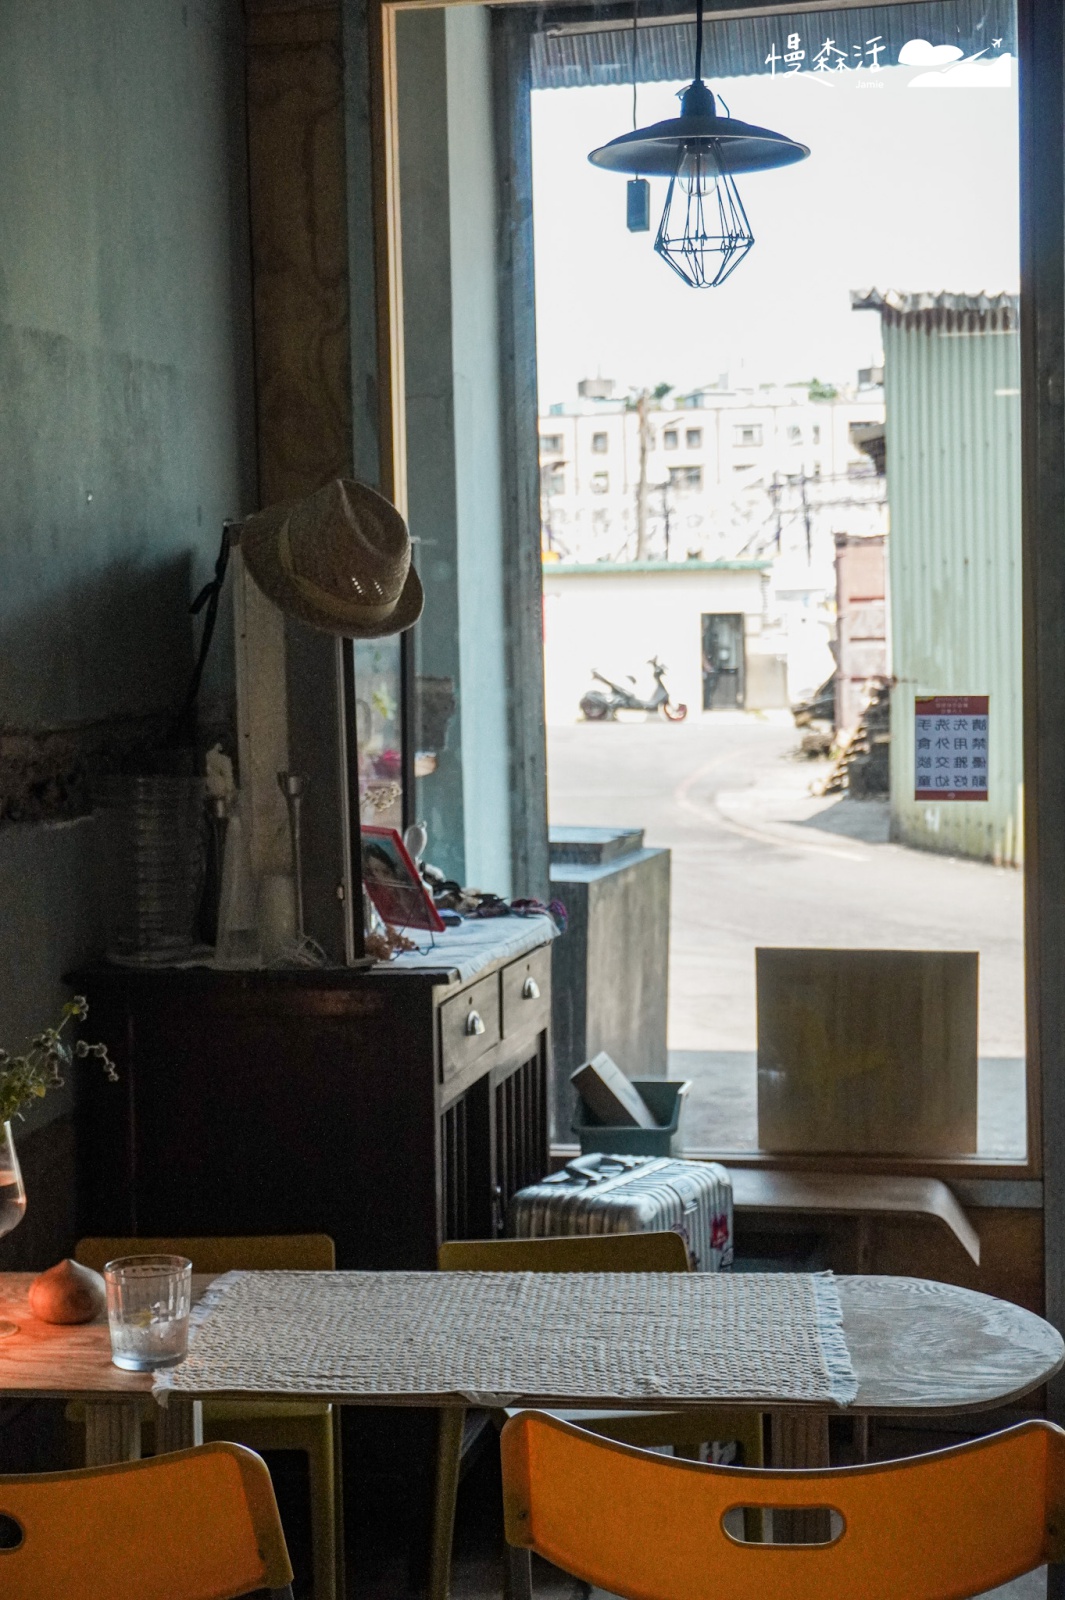 新北萬里區 野柳漁港邊「言方yenfang」咖啡館內